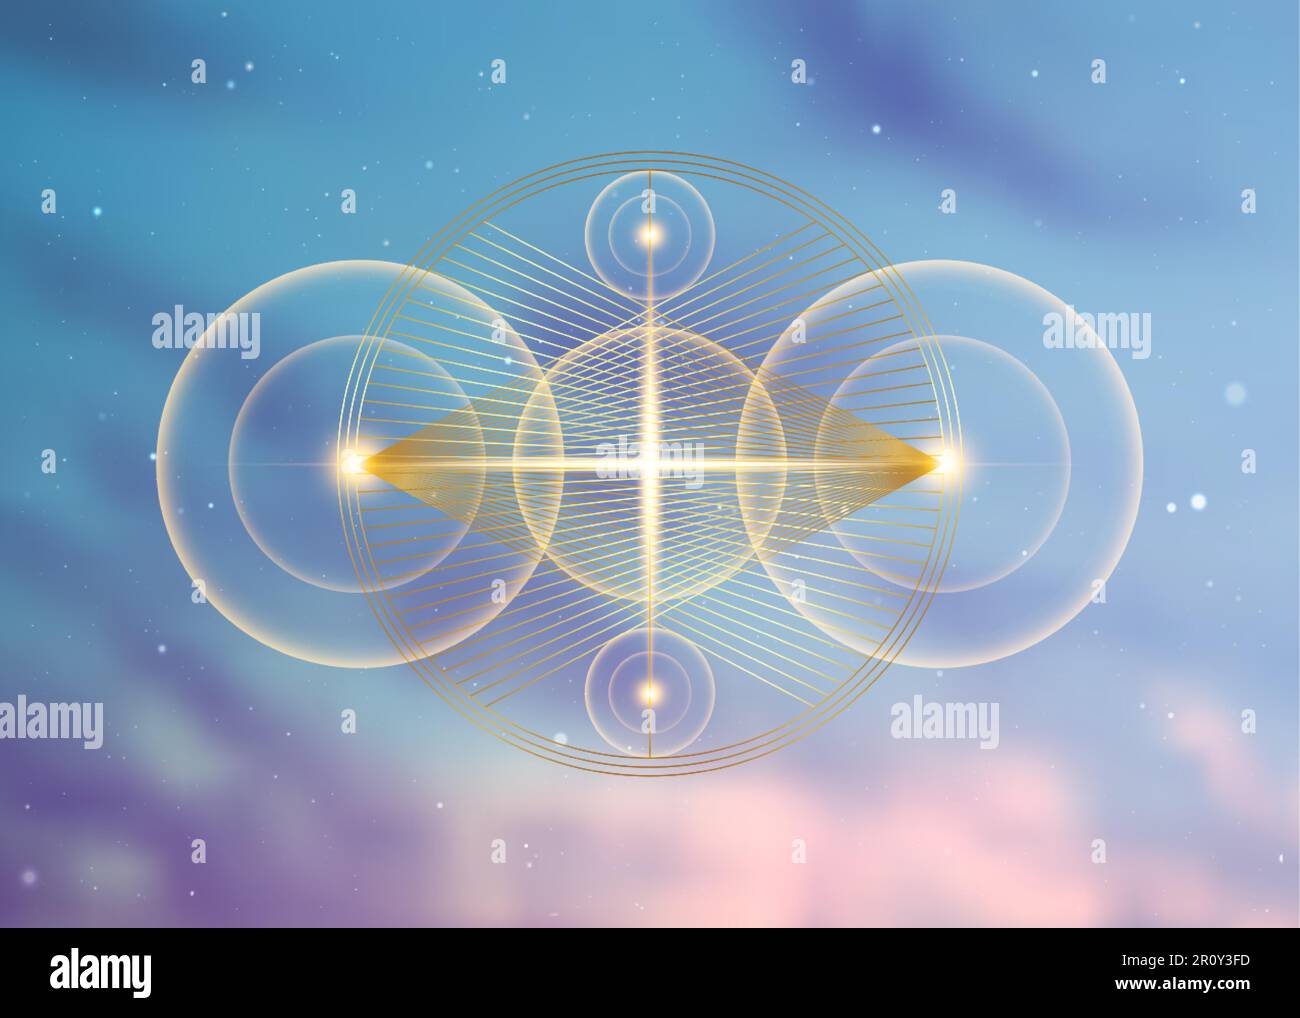 Geometria sacra planetaria, sovrapposizione delle linee d'oro, forma triangoli su cerchi. Orbite di cerchio di energia. Simboli di alchimia, magia, esoterico, occultismo Illustrazione Vettoriale